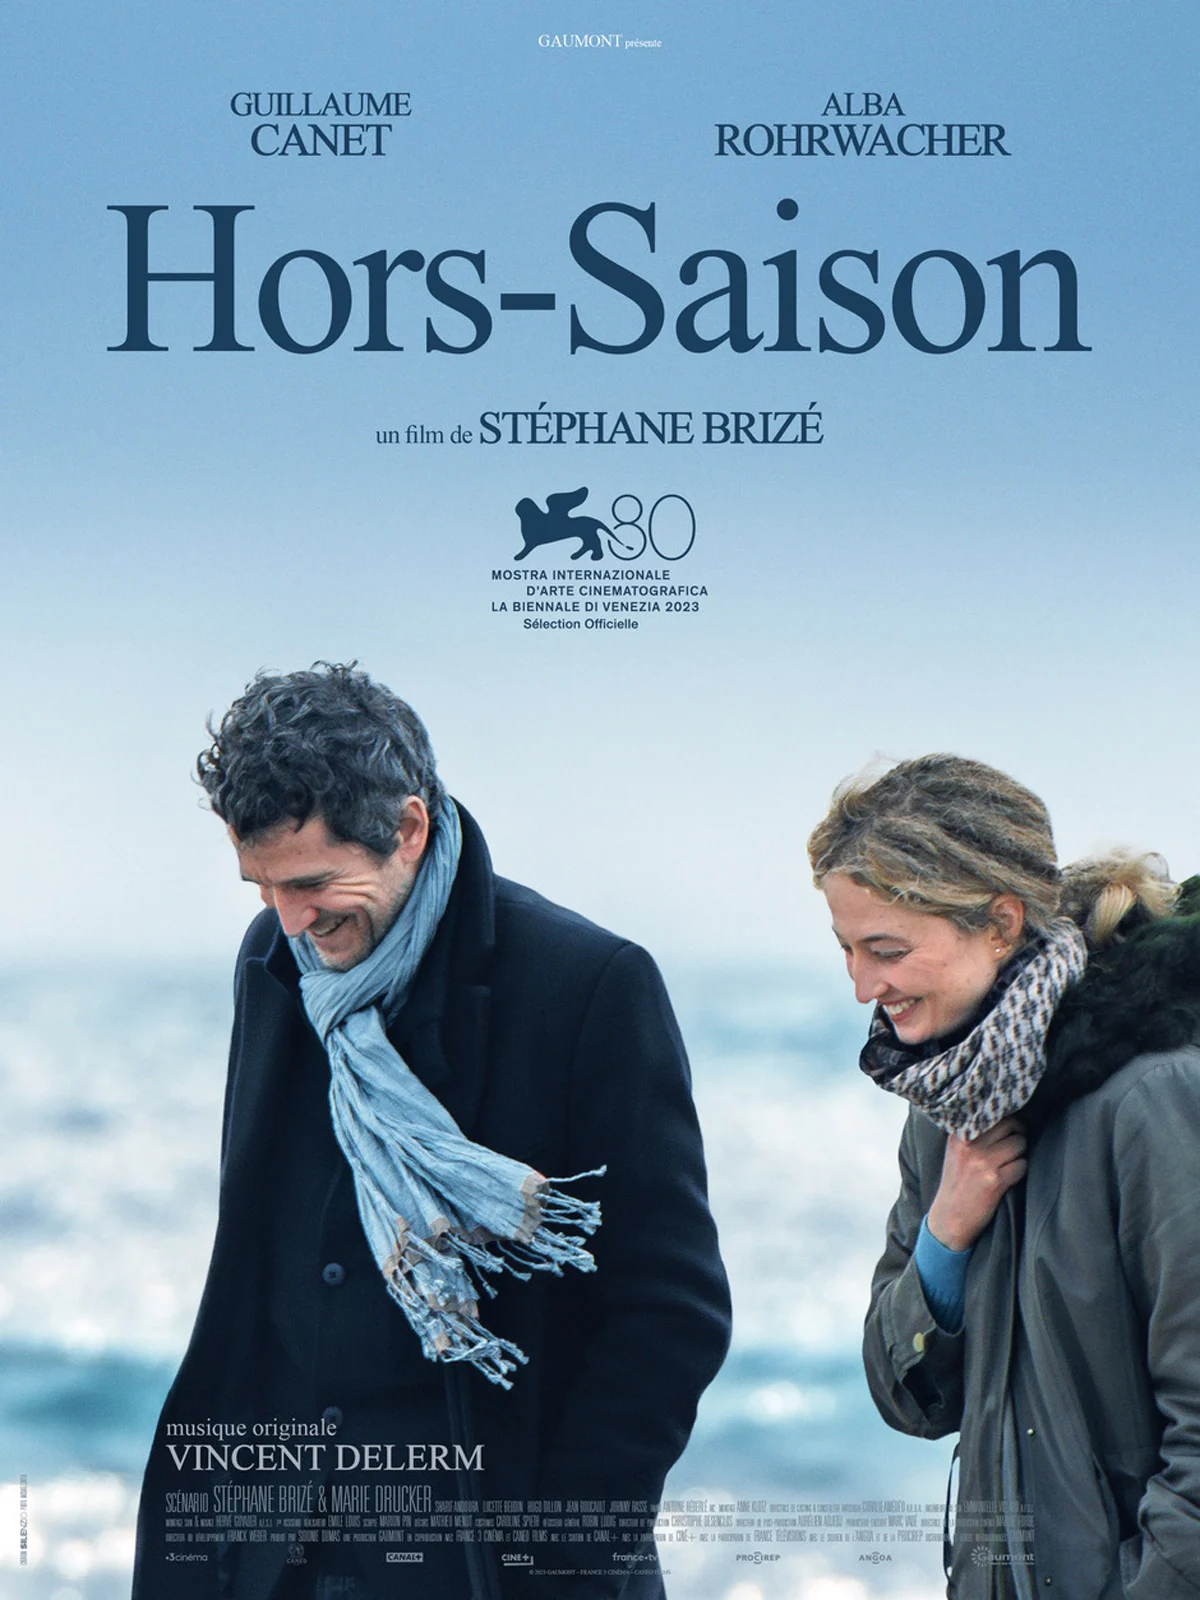 Hors-saison, un film de Stéphane Brizé